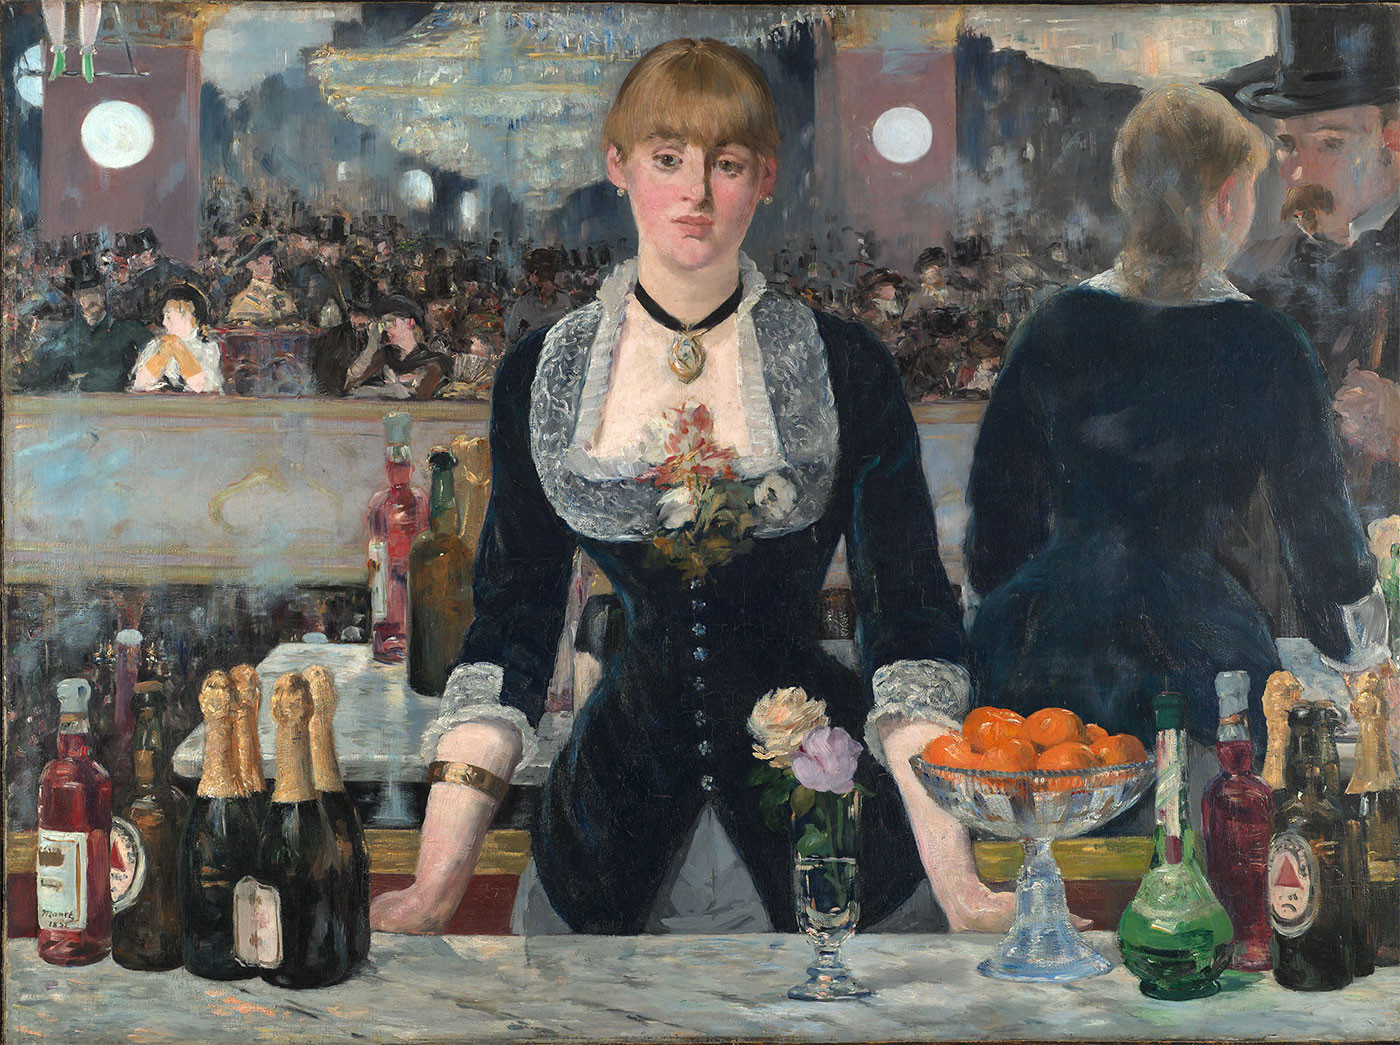 Chai bia cùng logo Bass xuất hiện trong bức tranh của danh họa nổi tiếng Édouard Manet. Ảnh: CNN.